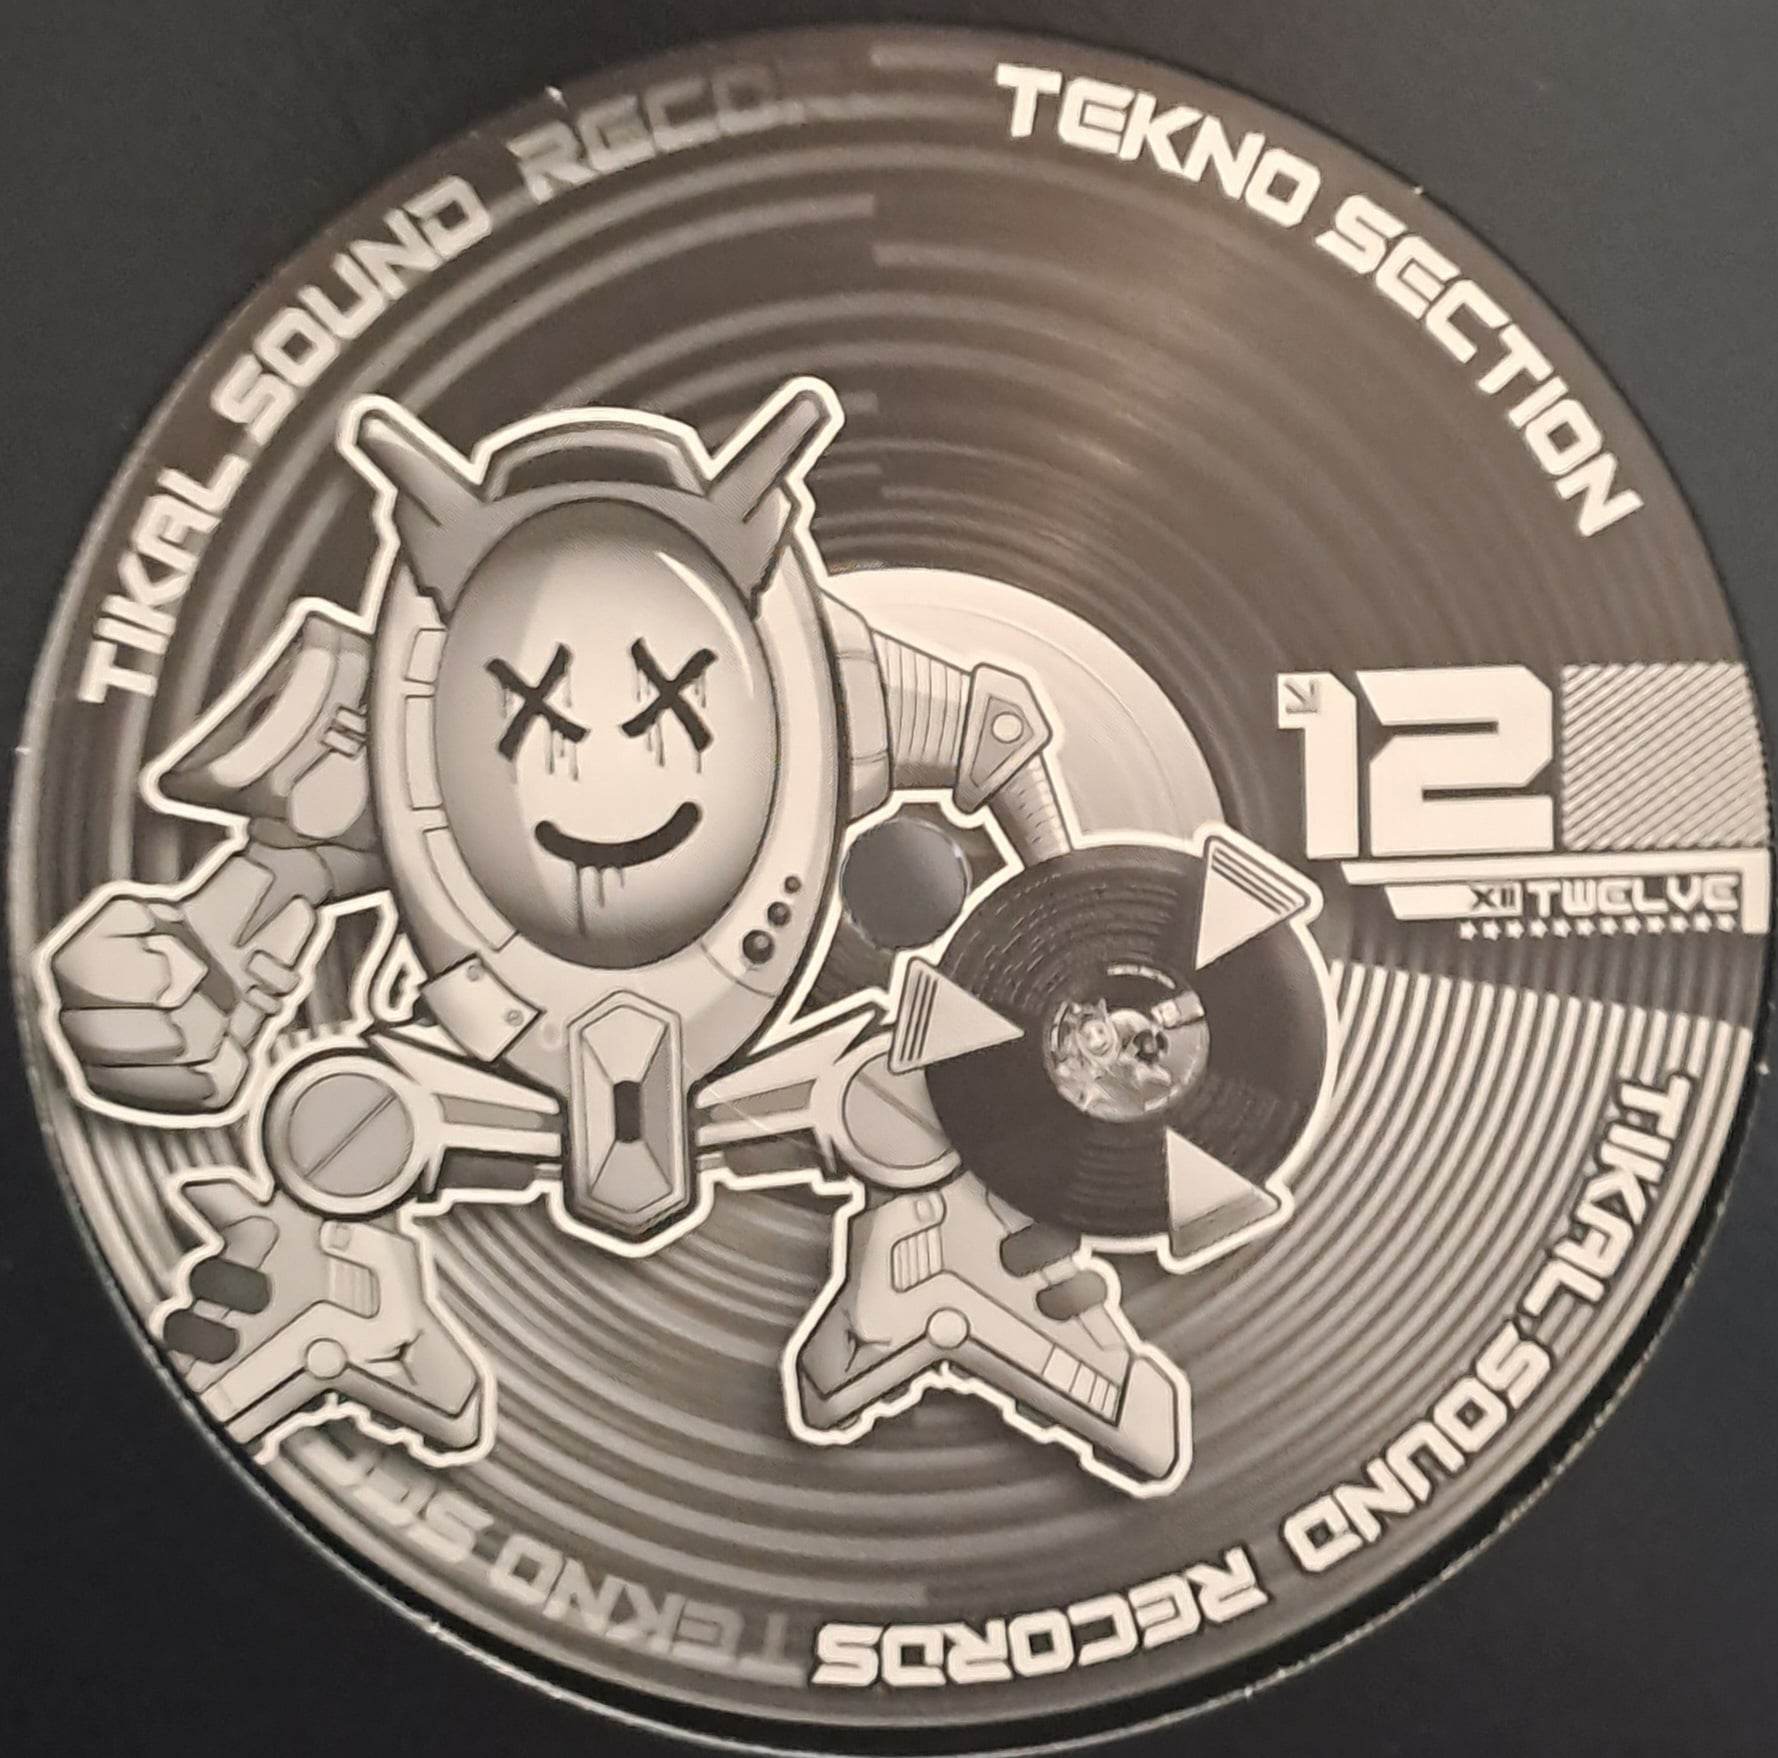 Tekno Section 12 (dernières copies en stock) - vinyle freetekno